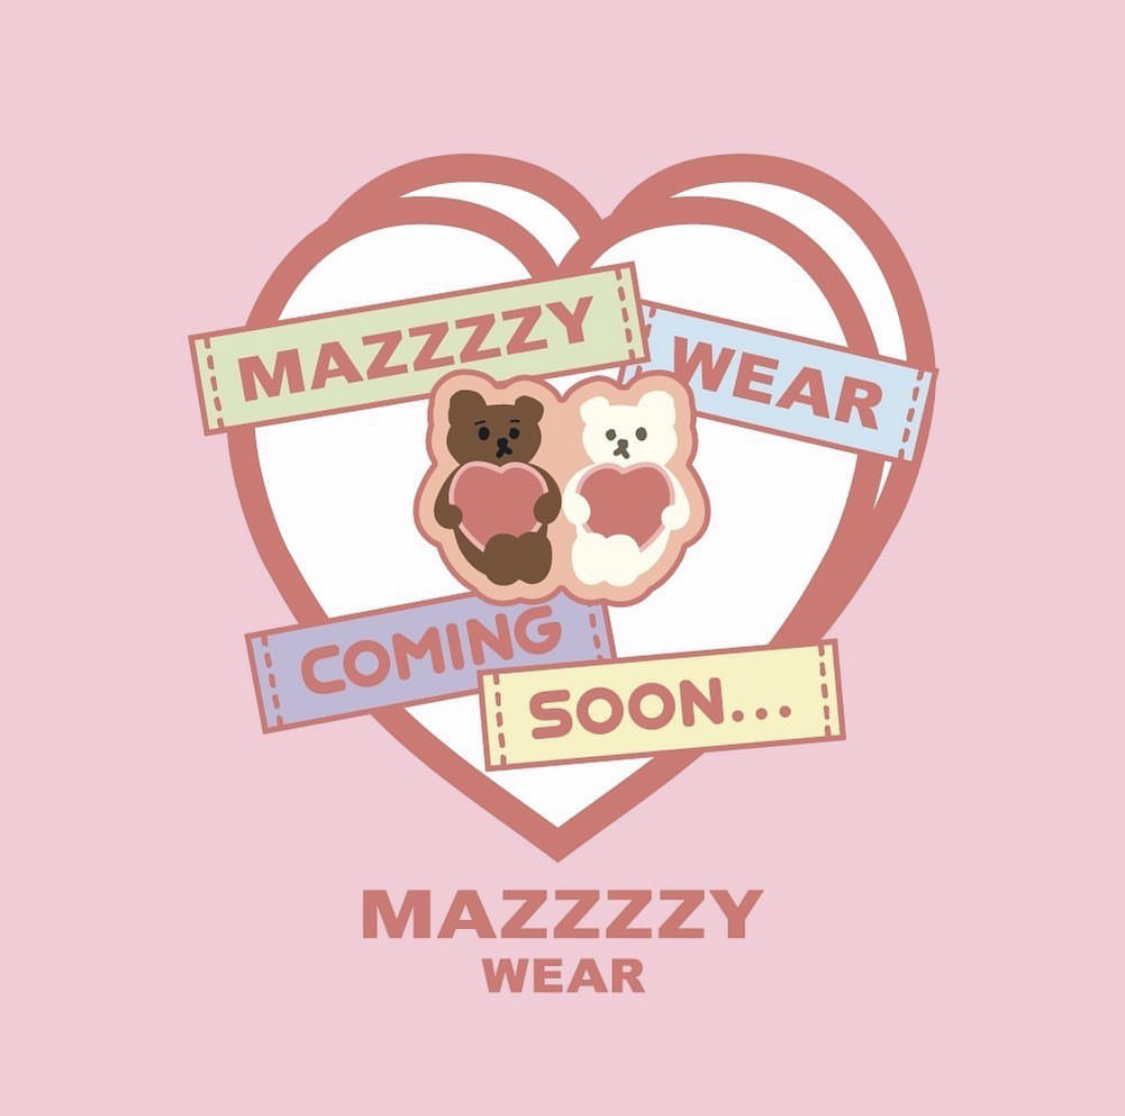 mazzzzy wear